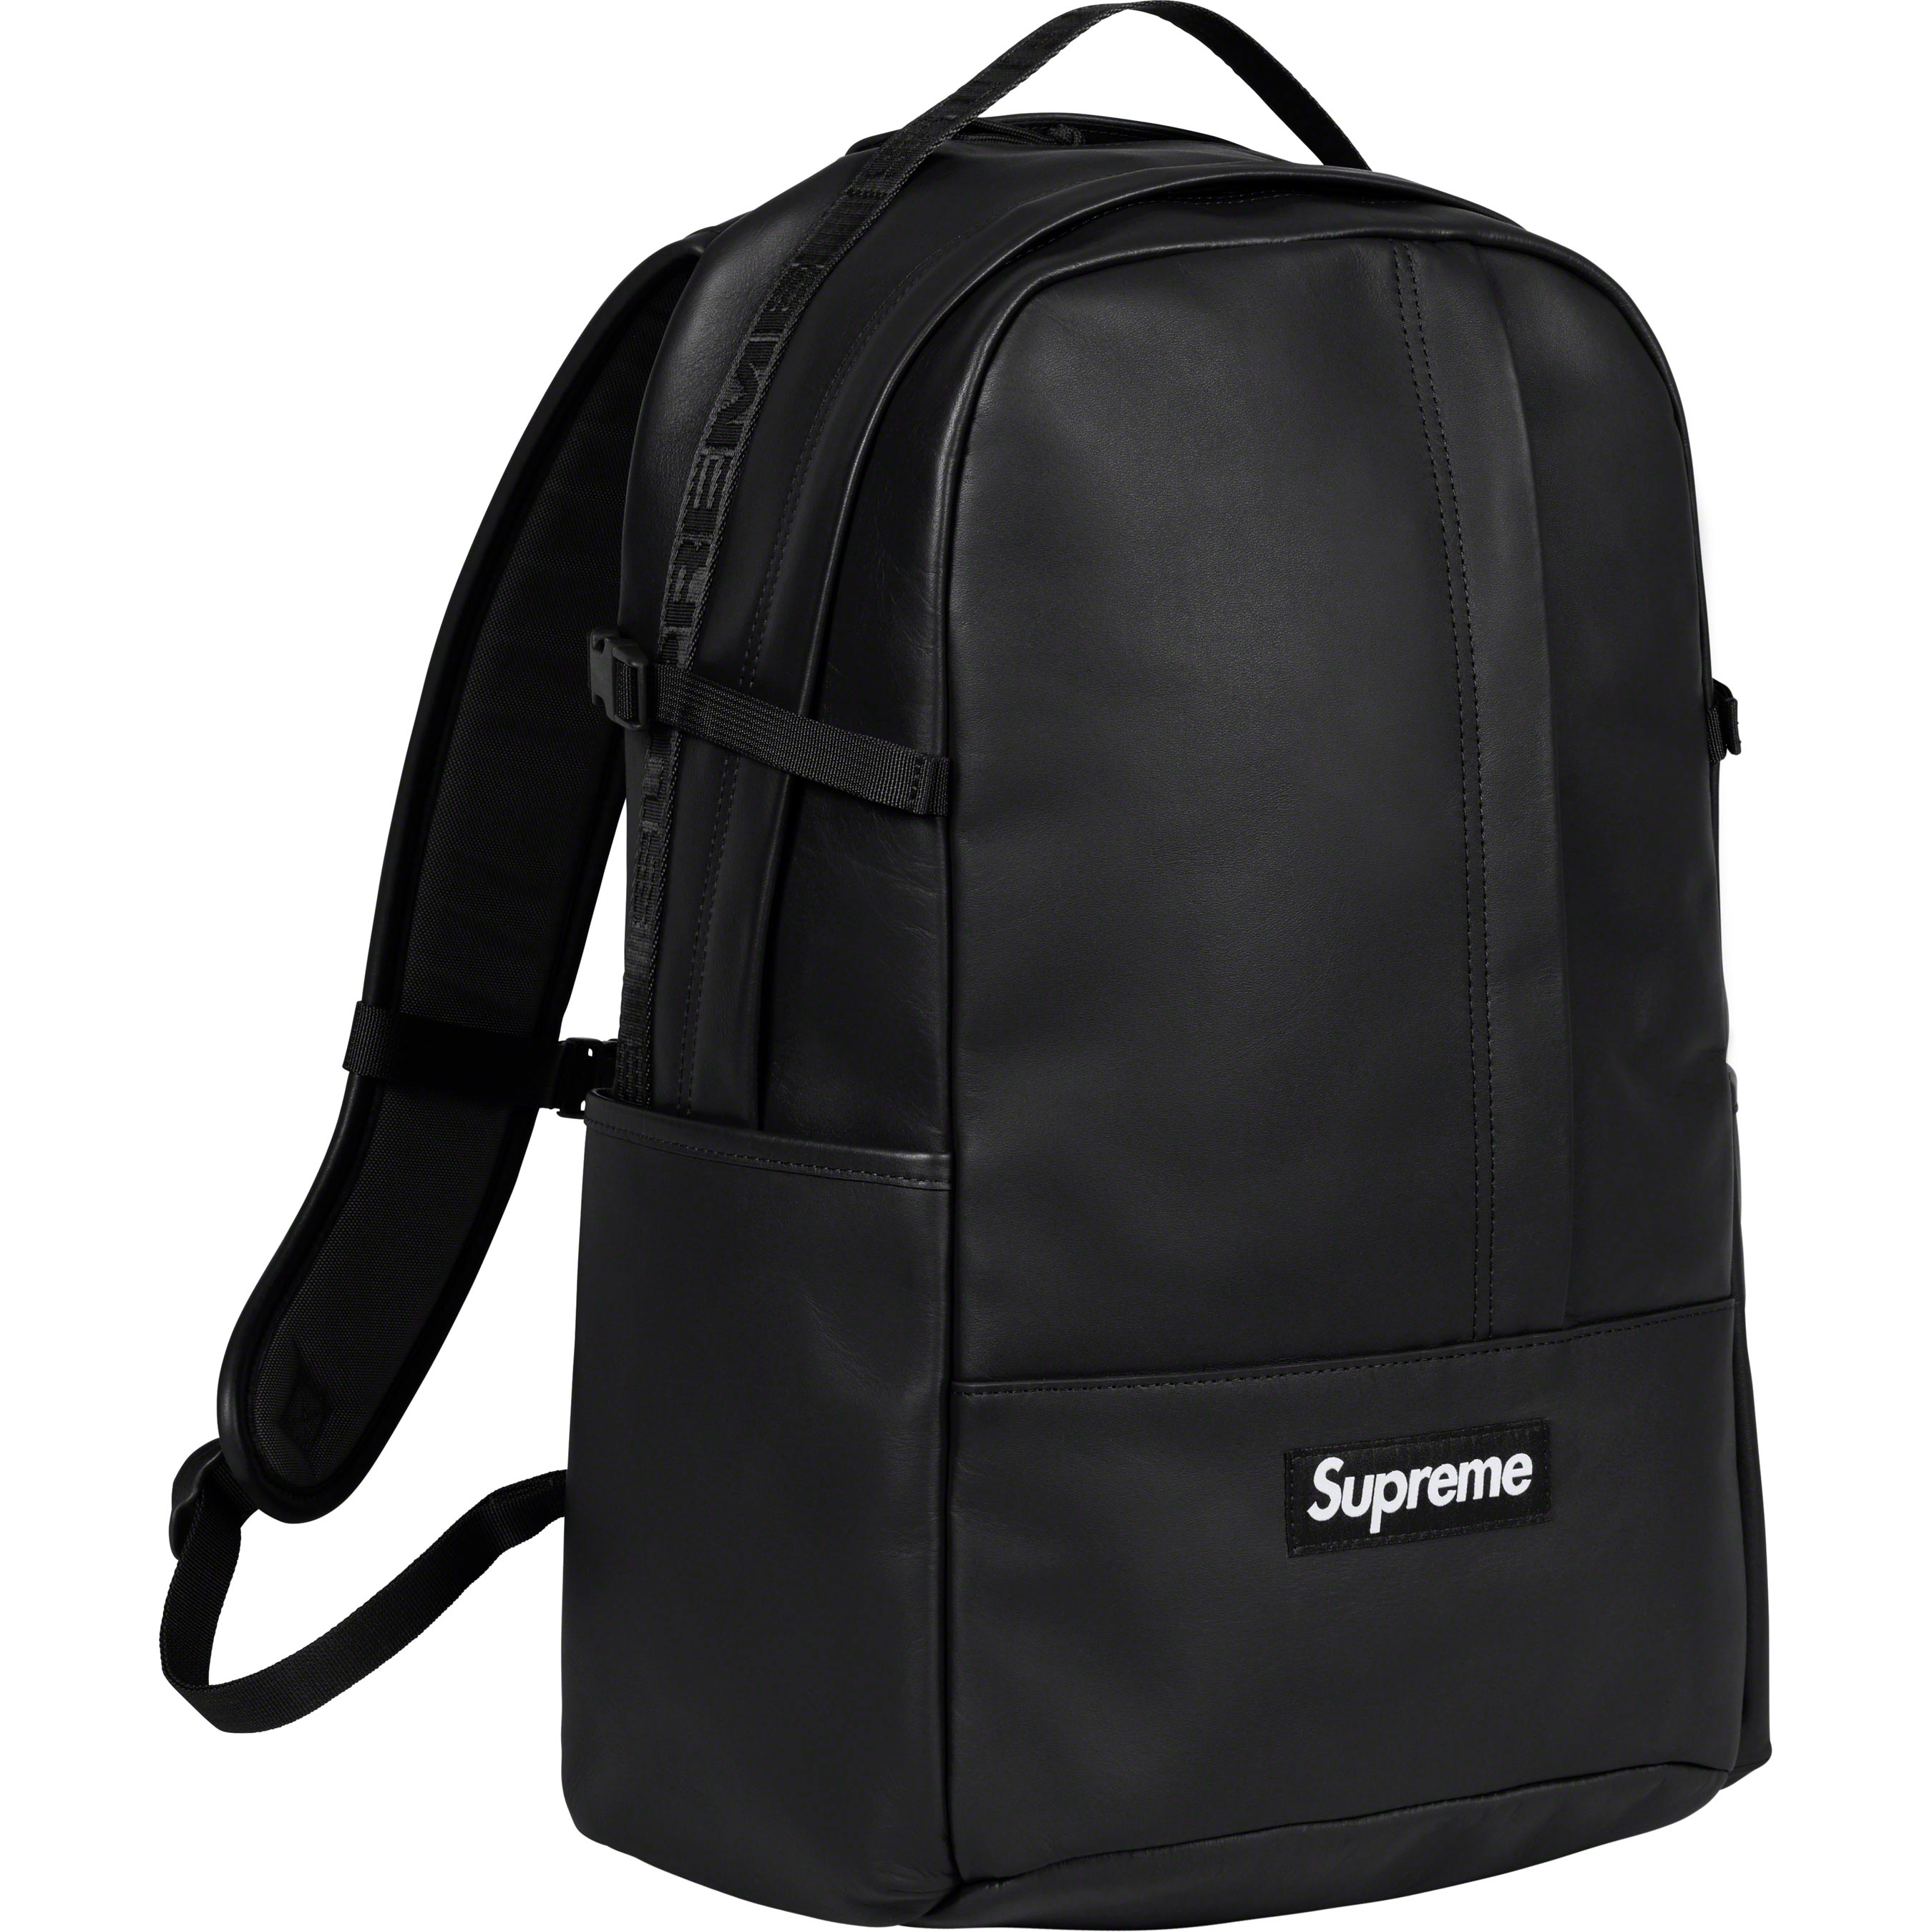 Supreme Leather Backpack "Black"